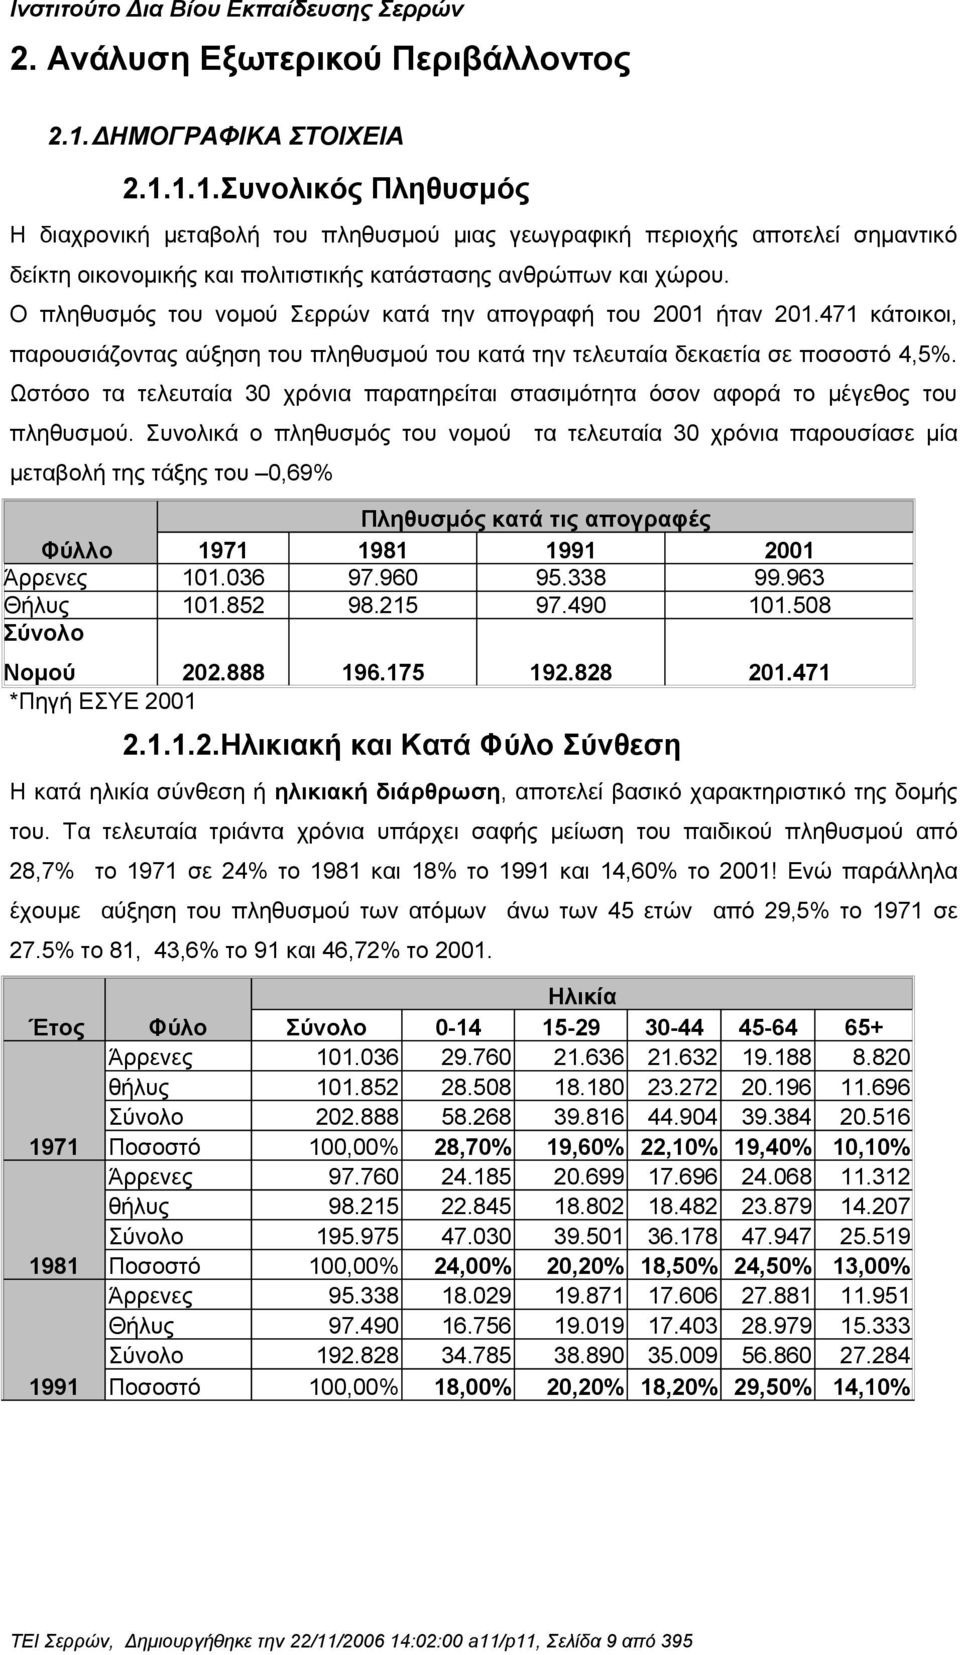 Ο πληθυσμός του νομού Σερρών κατά την απογραφή του 2001 ήταν 201.471 κάτοικοι, παρουσιάζοντας αύξηση του πληθυσμού του κατά την τελευταία δεκαετία σε ποσοστό 4,5%.